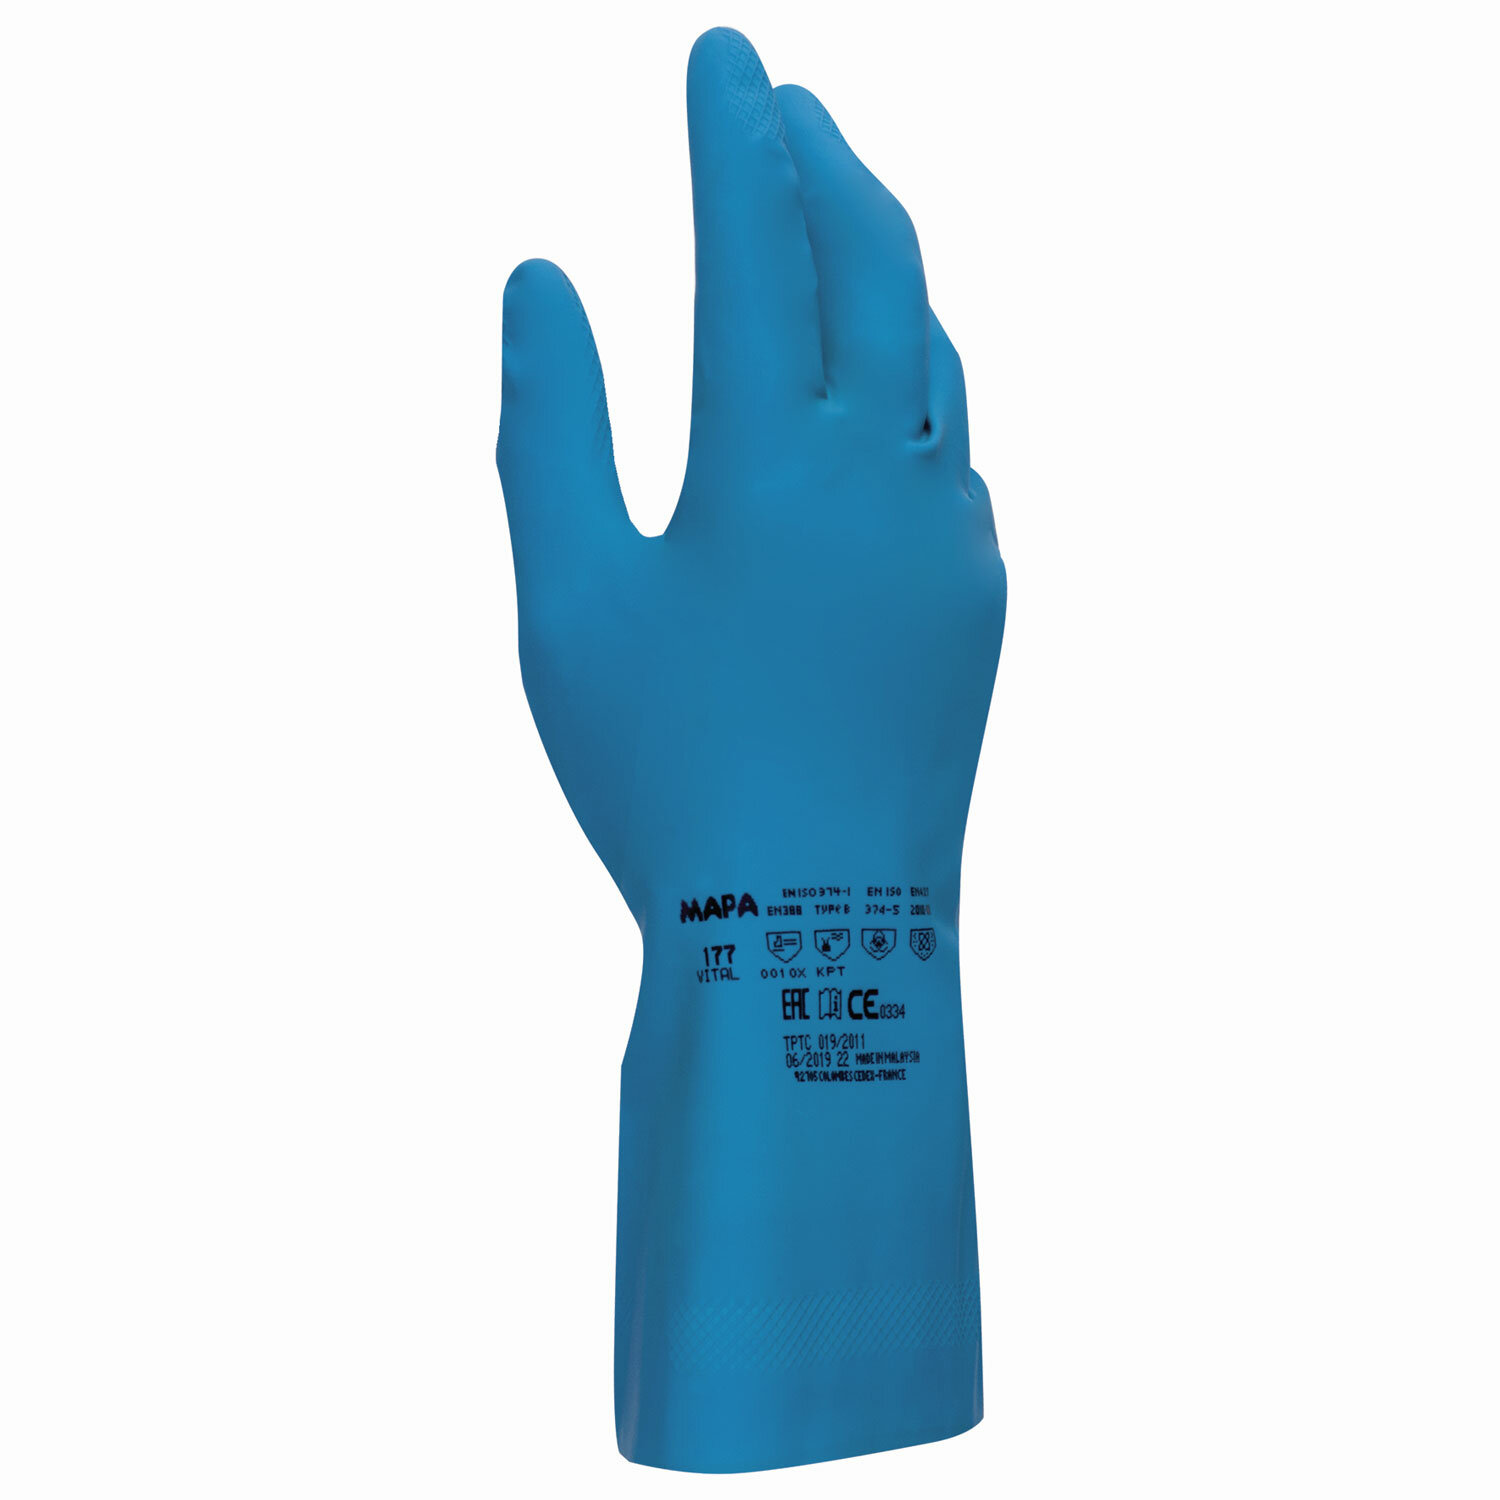 Перчатки хозяйственно-бытовые латексные, хлорированное покрытие, от химических воздействий, 7 (S), синий, MAPA Superfood/Vital (Vital 177)